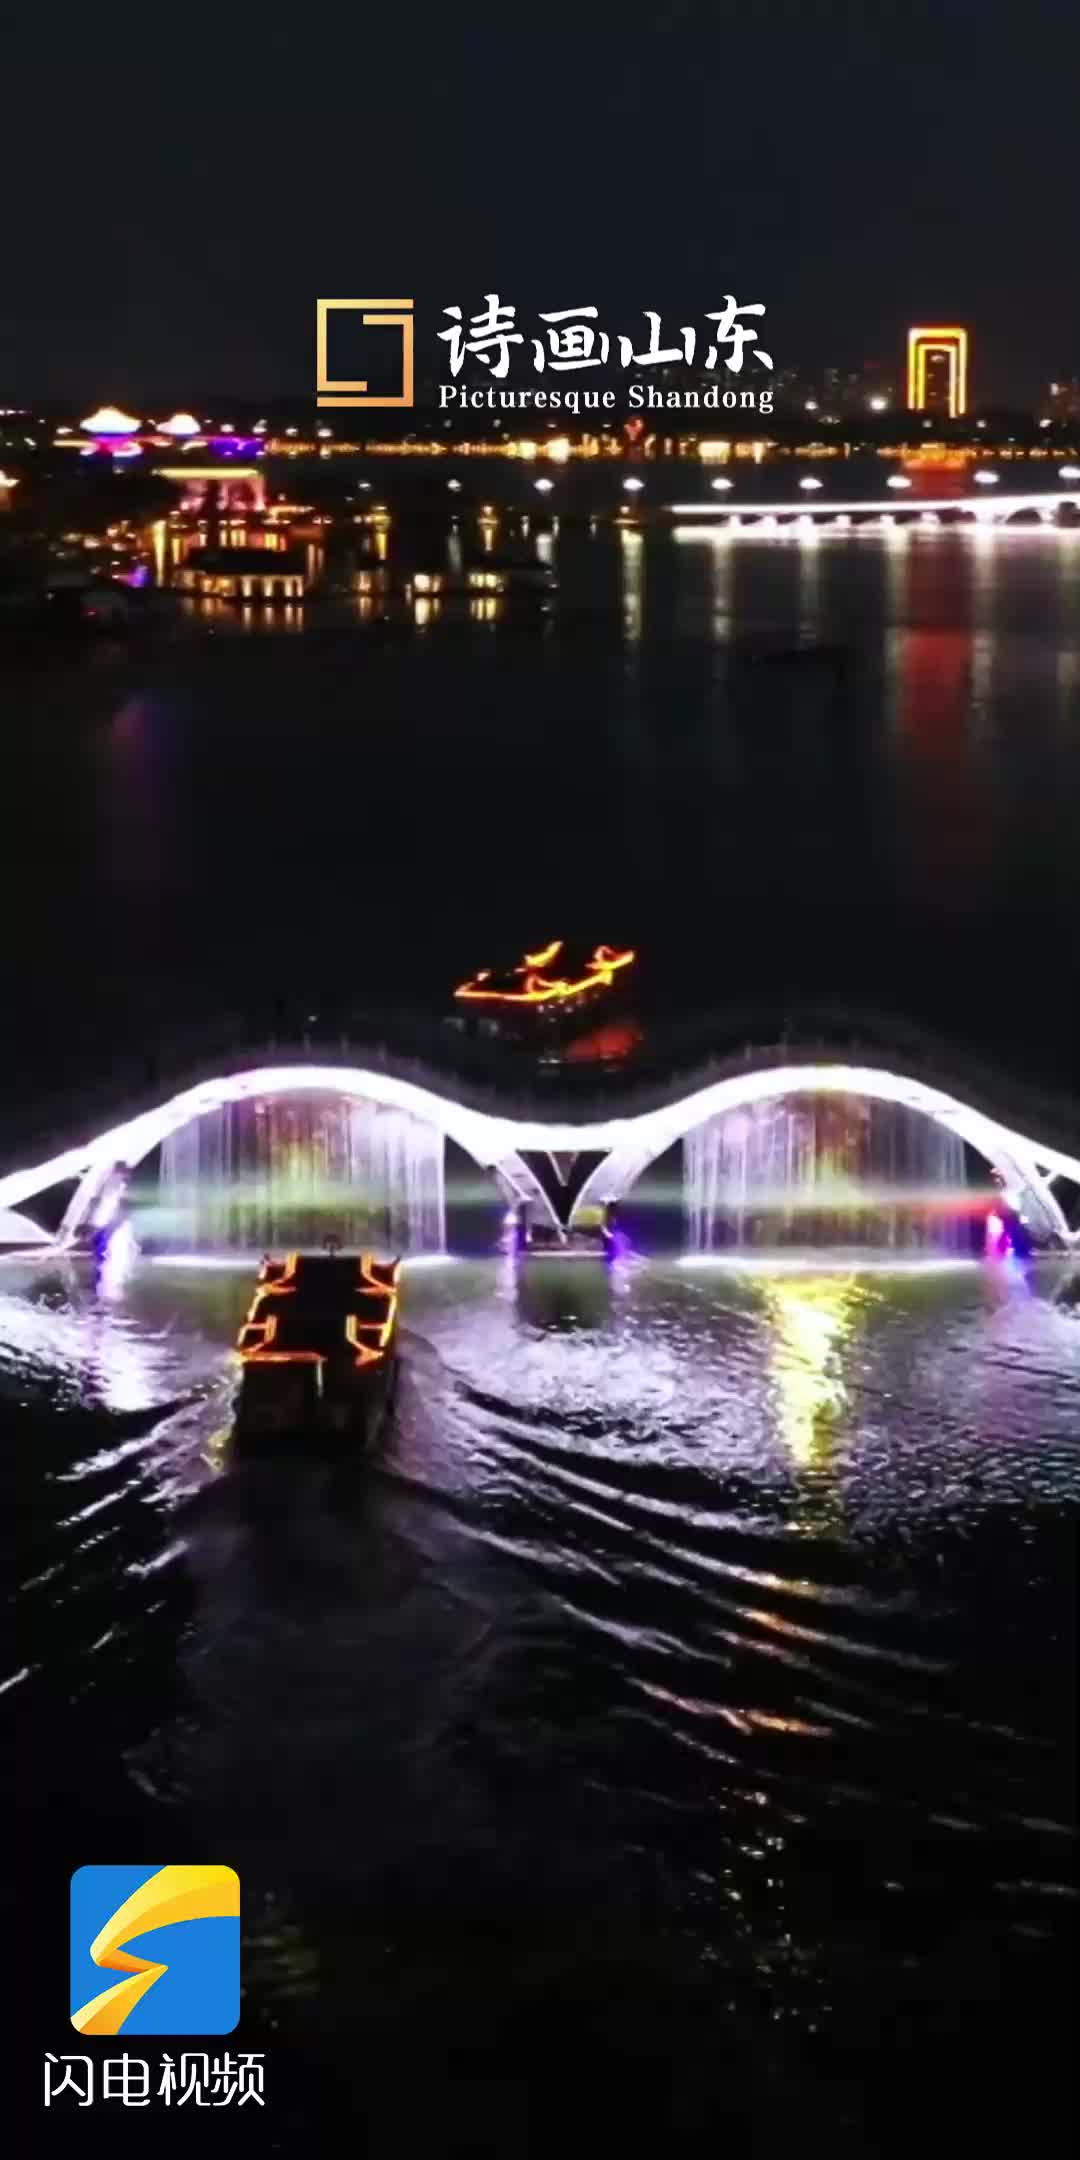 聊城：东昌湖绽放璀璨光影 乘船夜游尽享文化盛宴